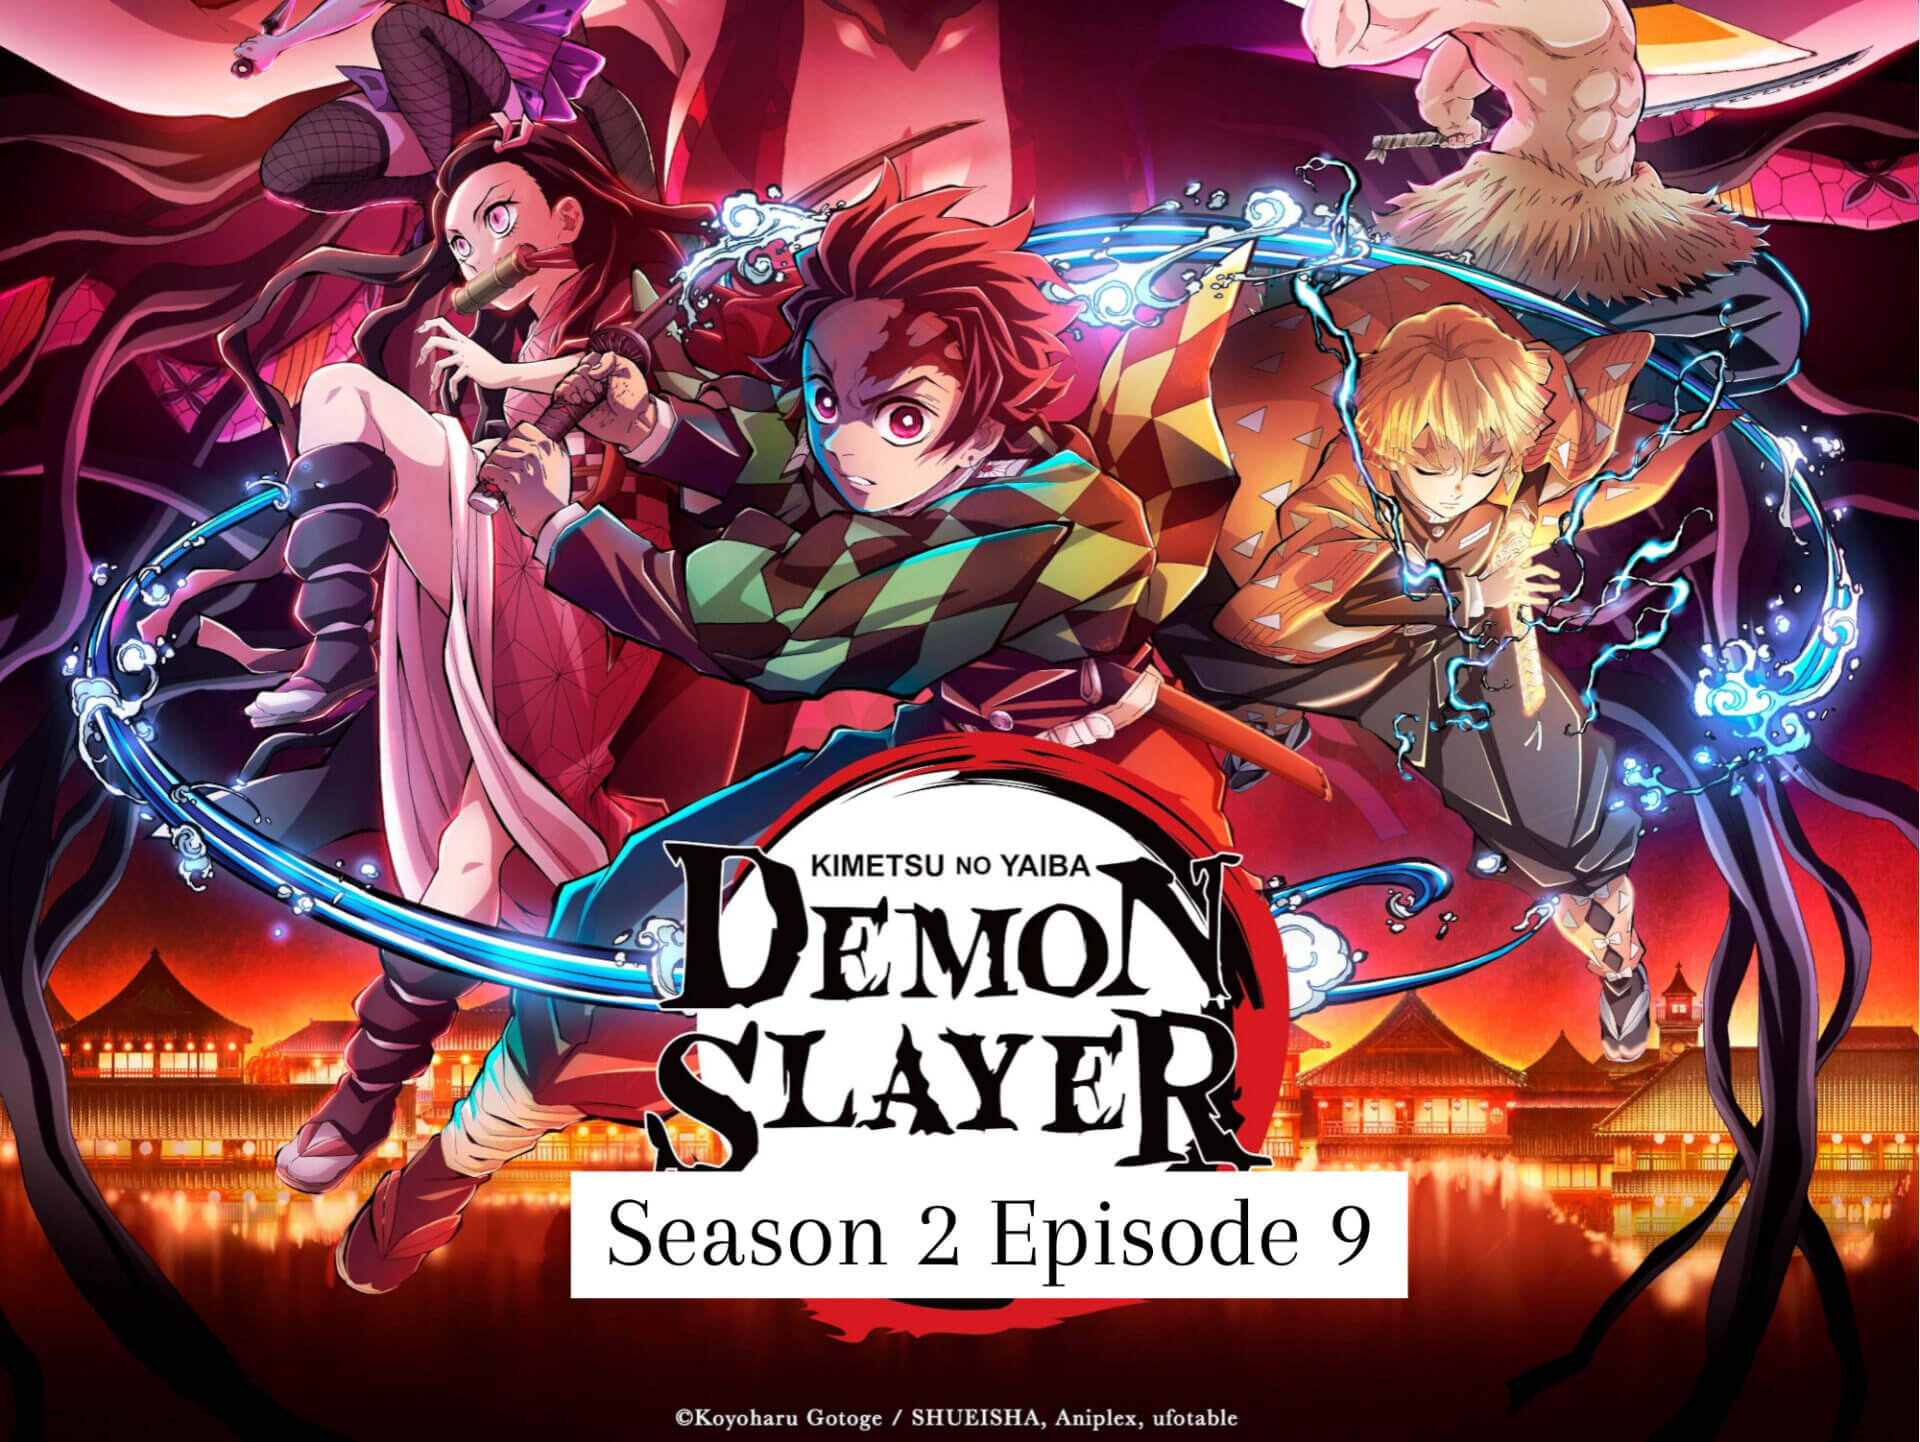 Demon slayer season 2 release date in malaysia countdown